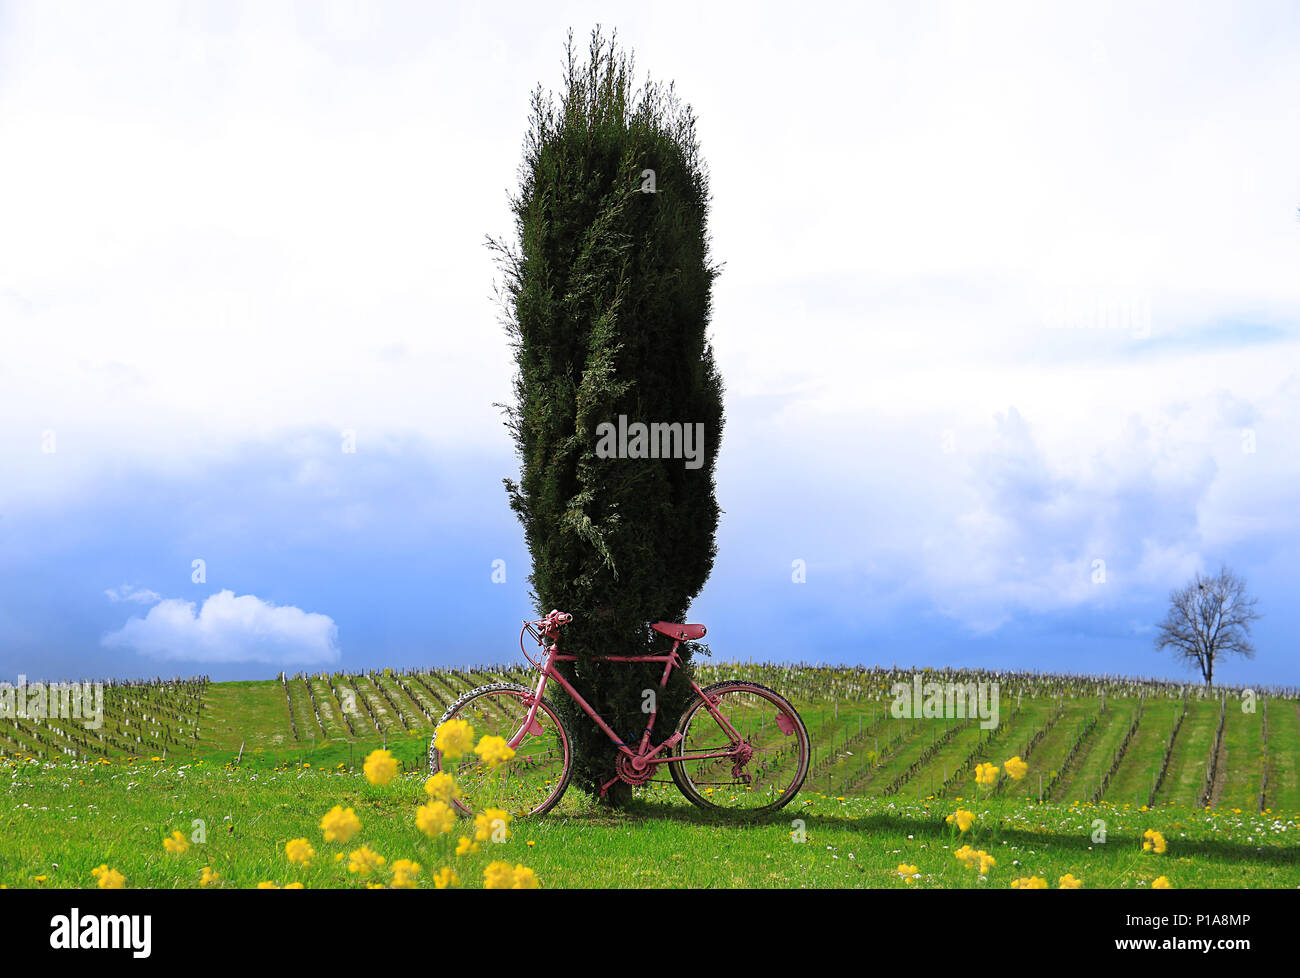 Un vélo rose dans un domaine lié à un cyprès. Banque D'Images